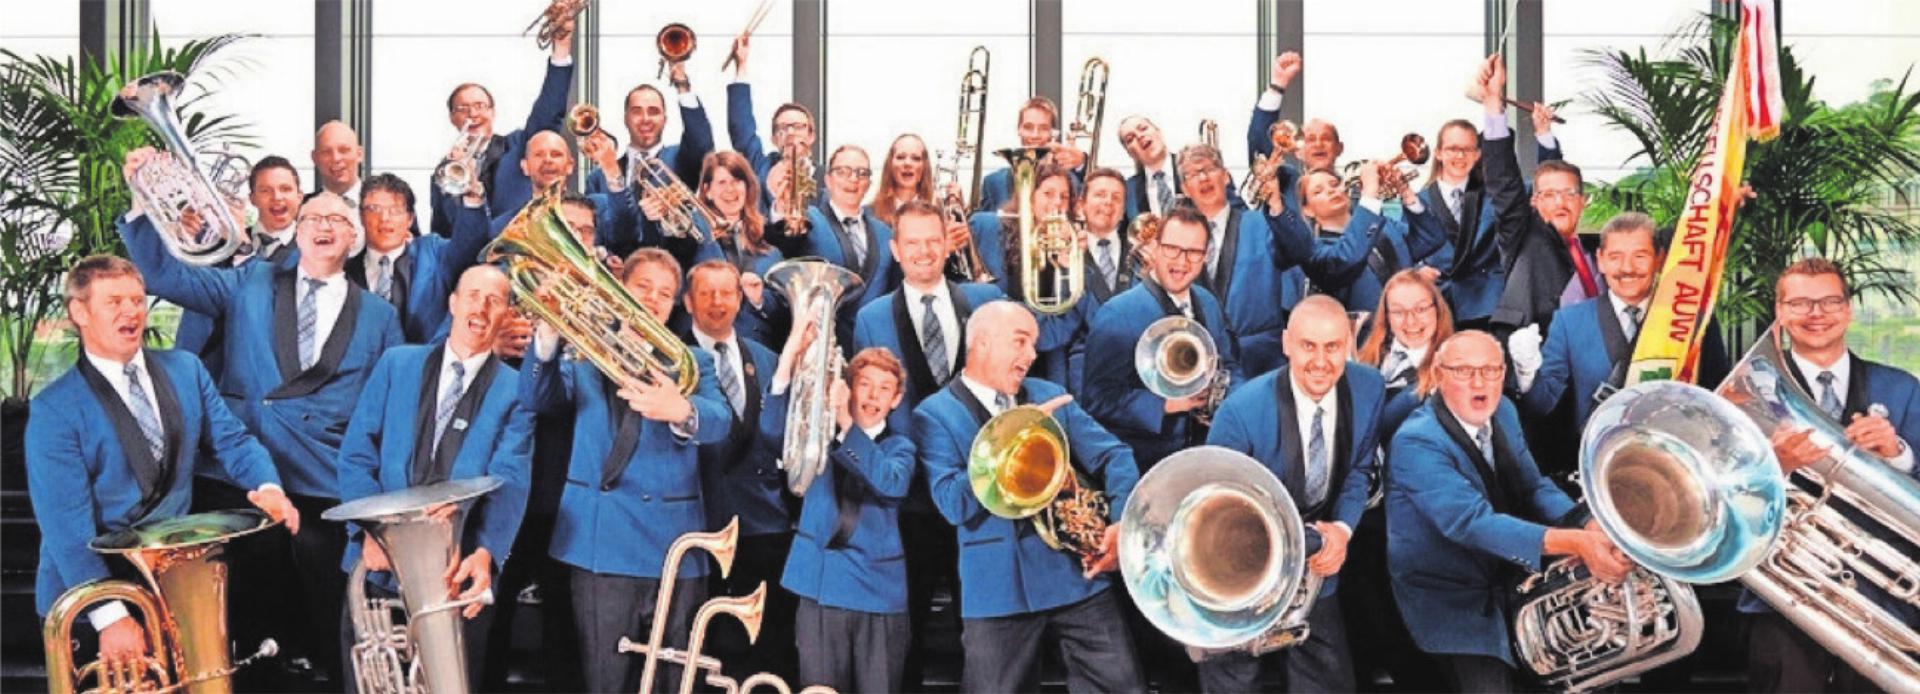 Die Brass-Band Auw stemmt einmal mehr ihr grosses Dorffest. Bilder: zg